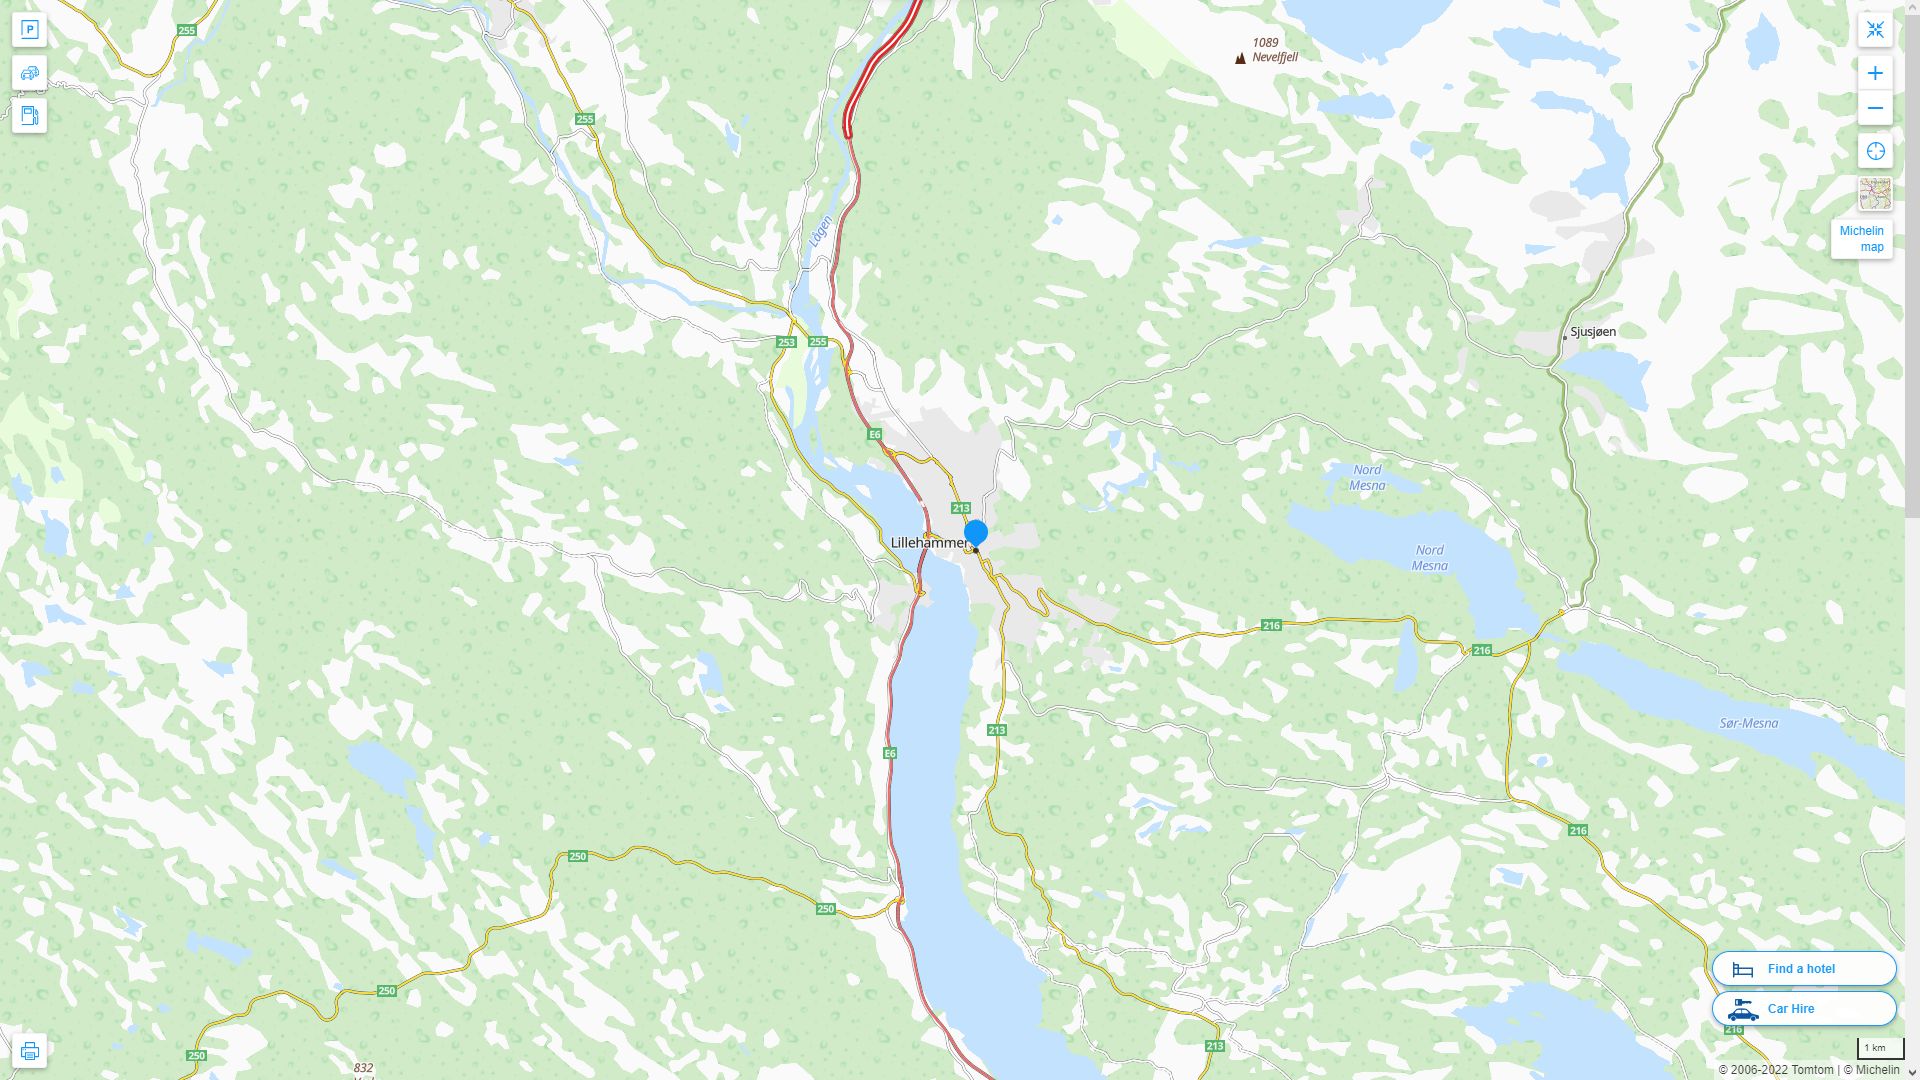 Lillehammer Norvege Autoroute et carte routiere